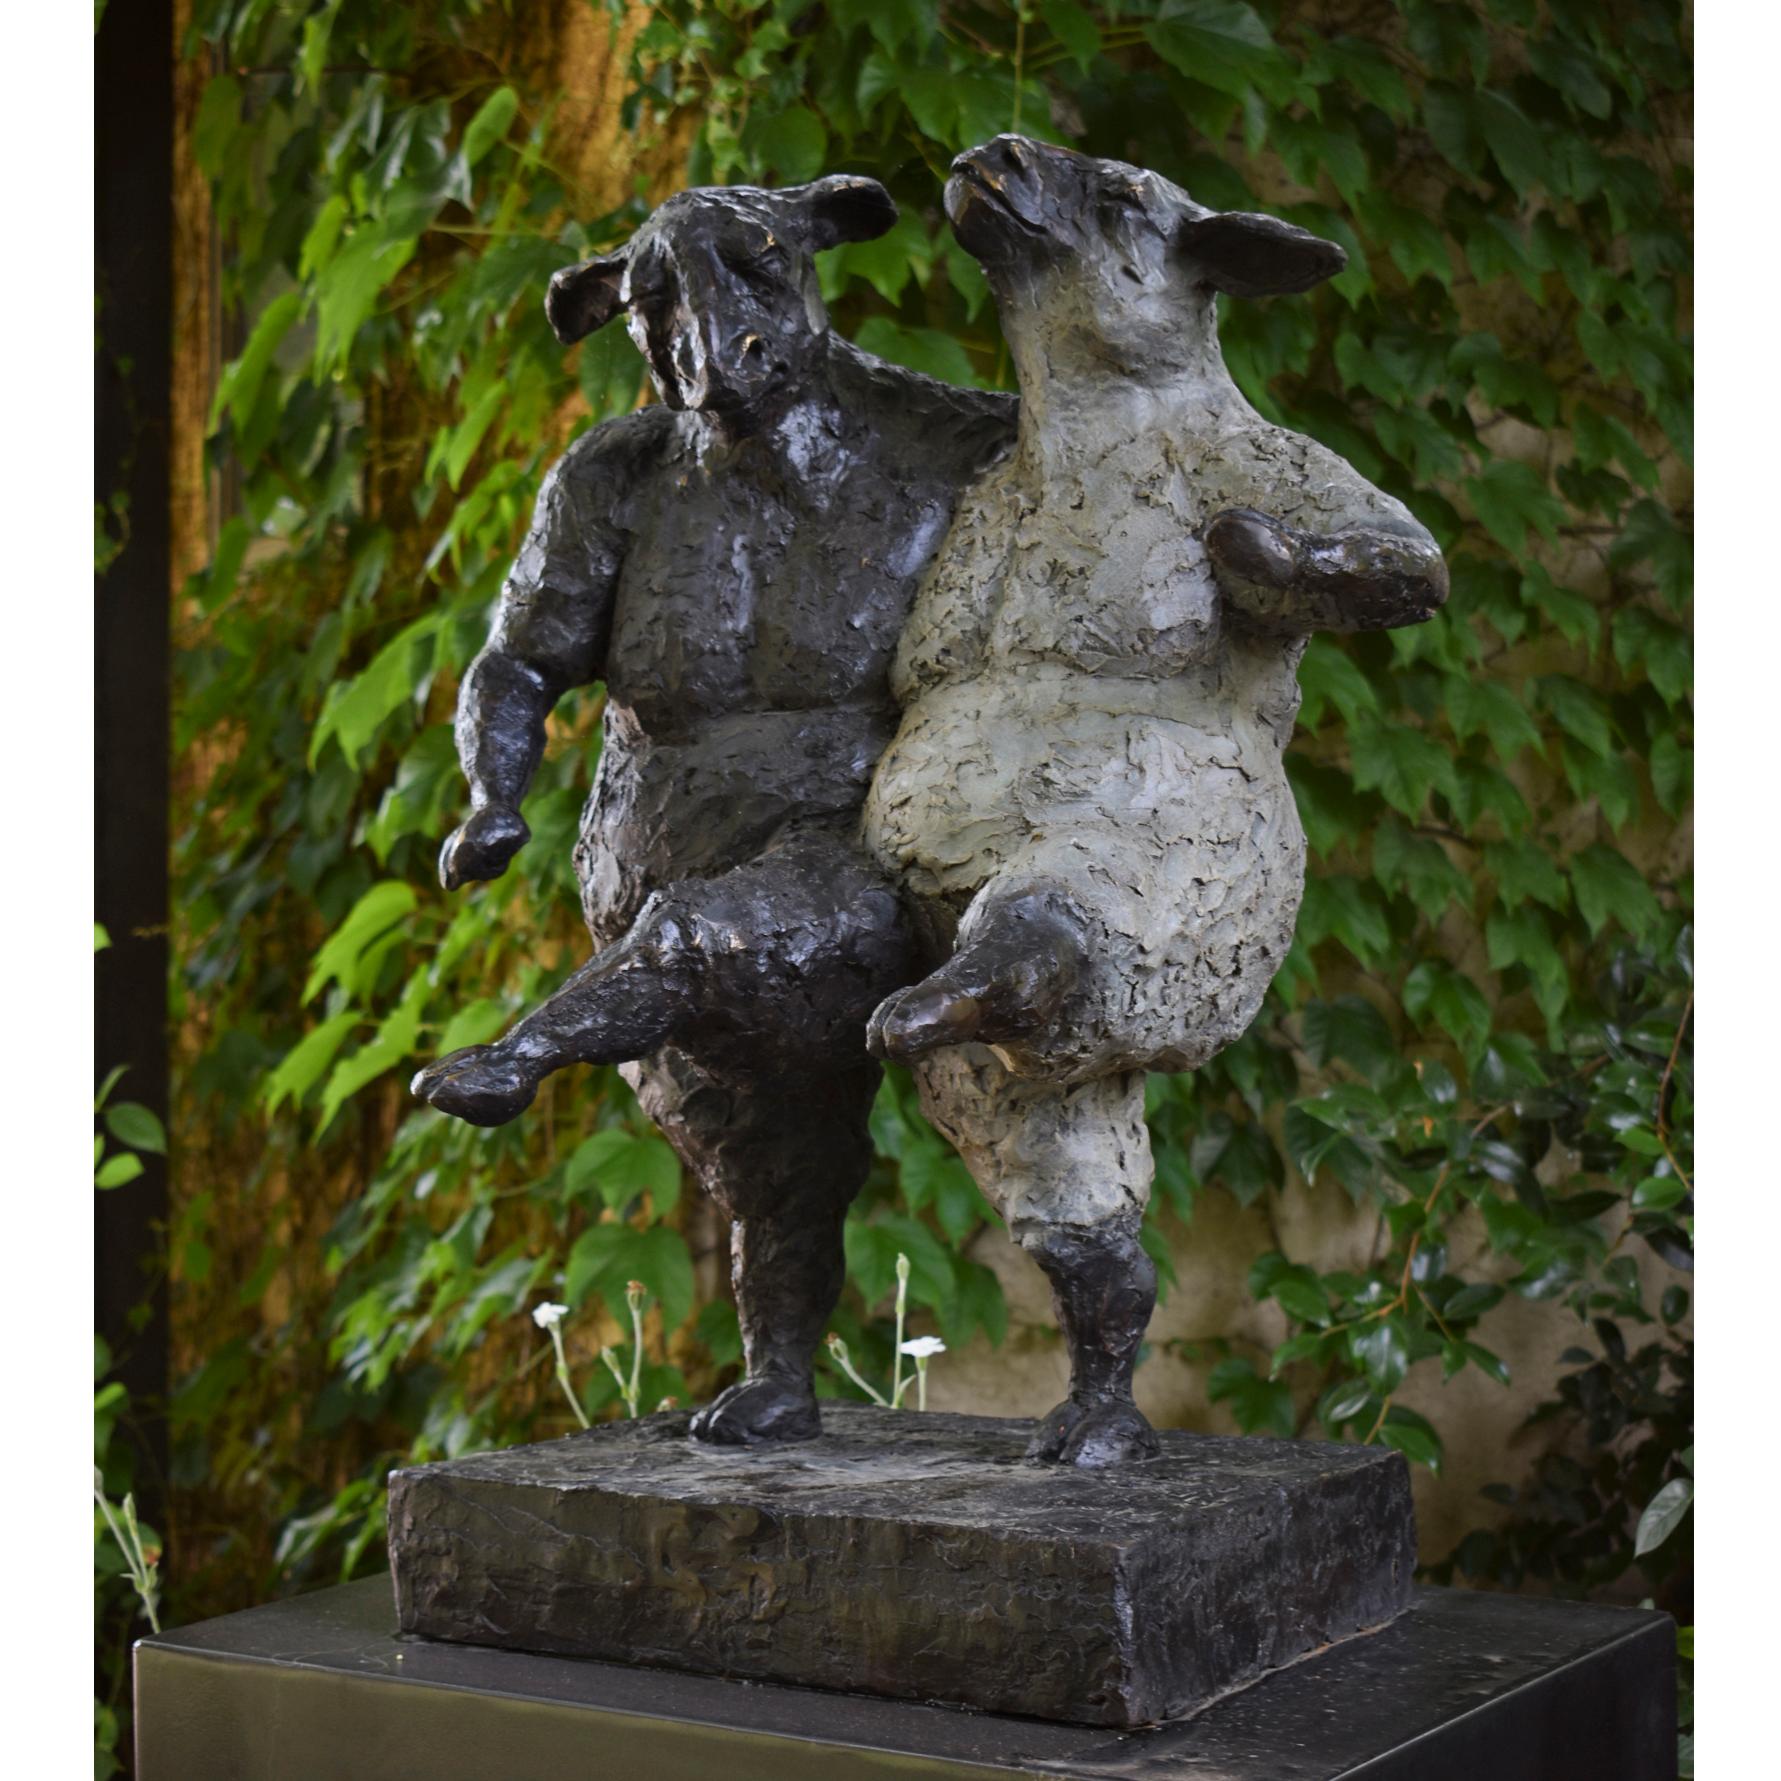 Giuseppe Palumbo Figurative Sculpture - Ewe 2 8/30 (One Baaad)